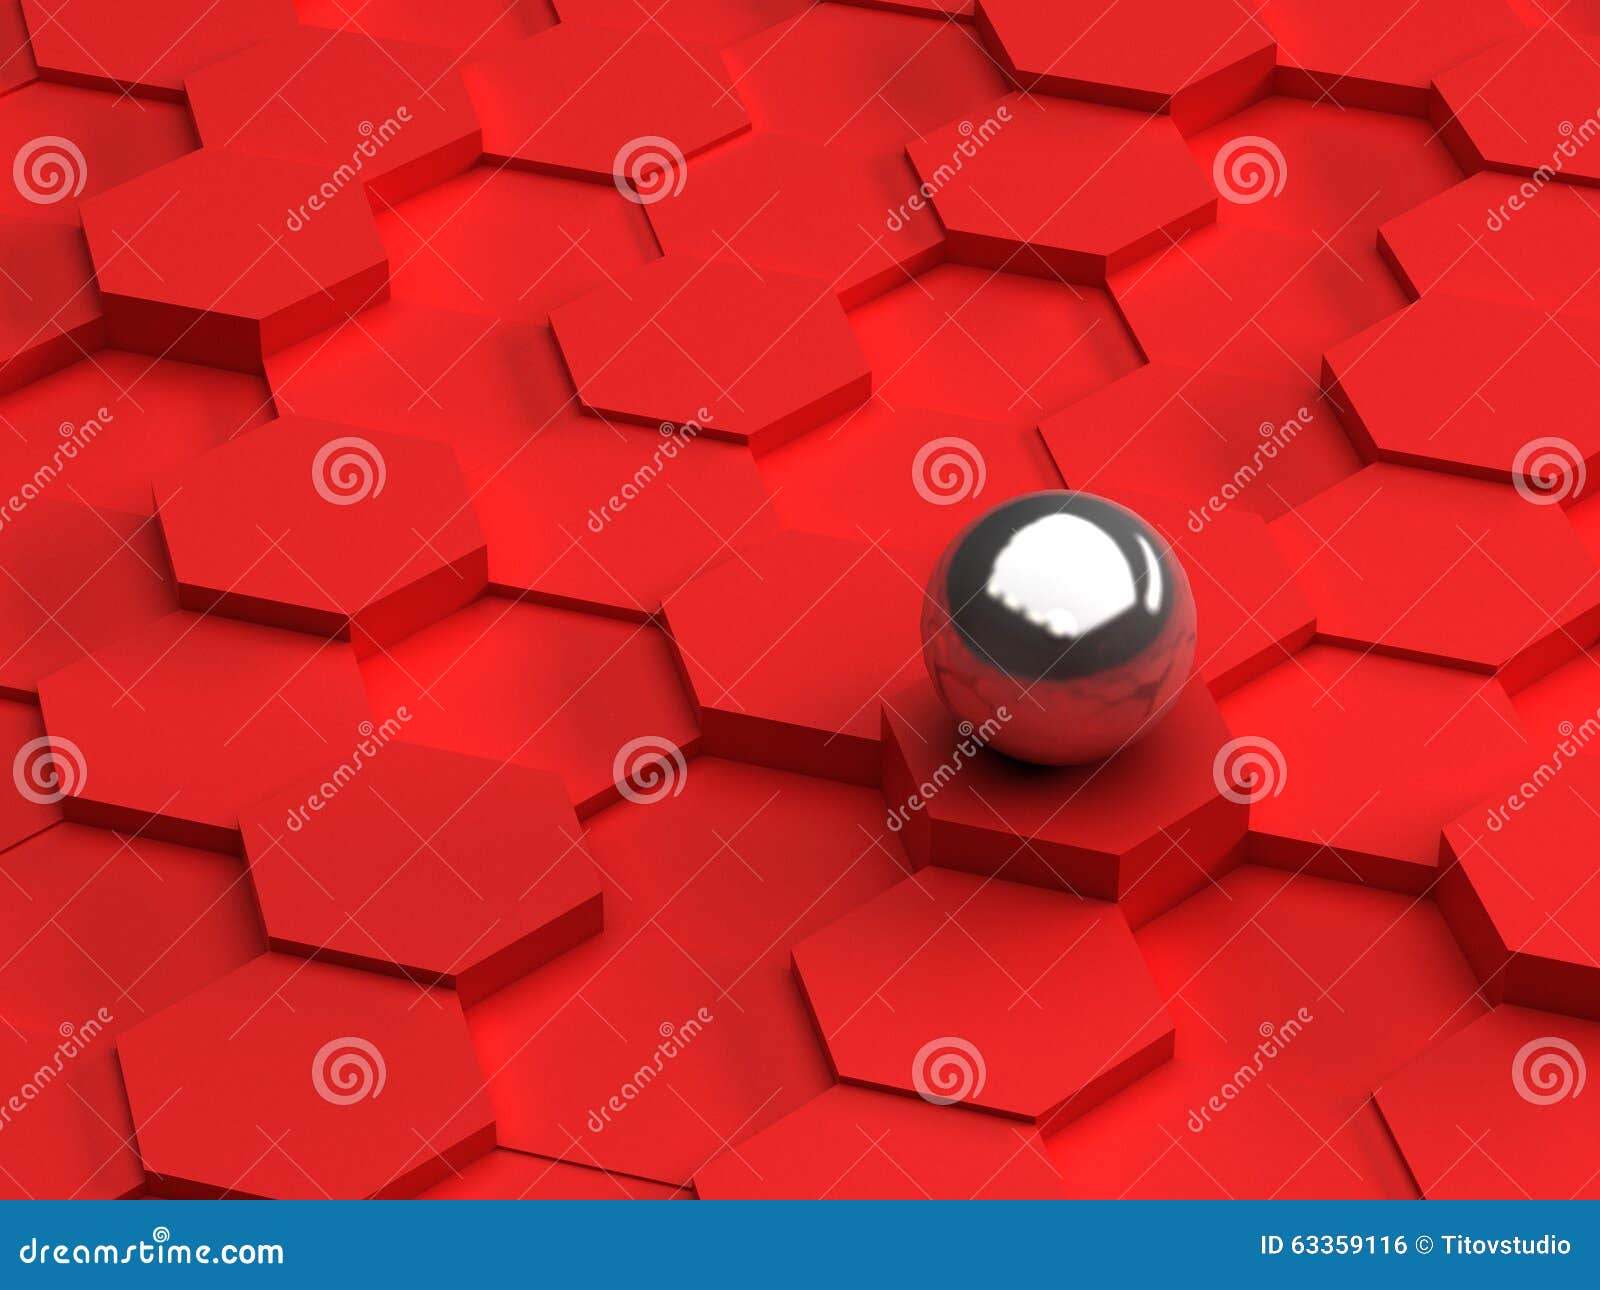 Fondo rosso degli esagoni 3d e della sfera d'acciaio. Fondo astratto degli esagoni 3D